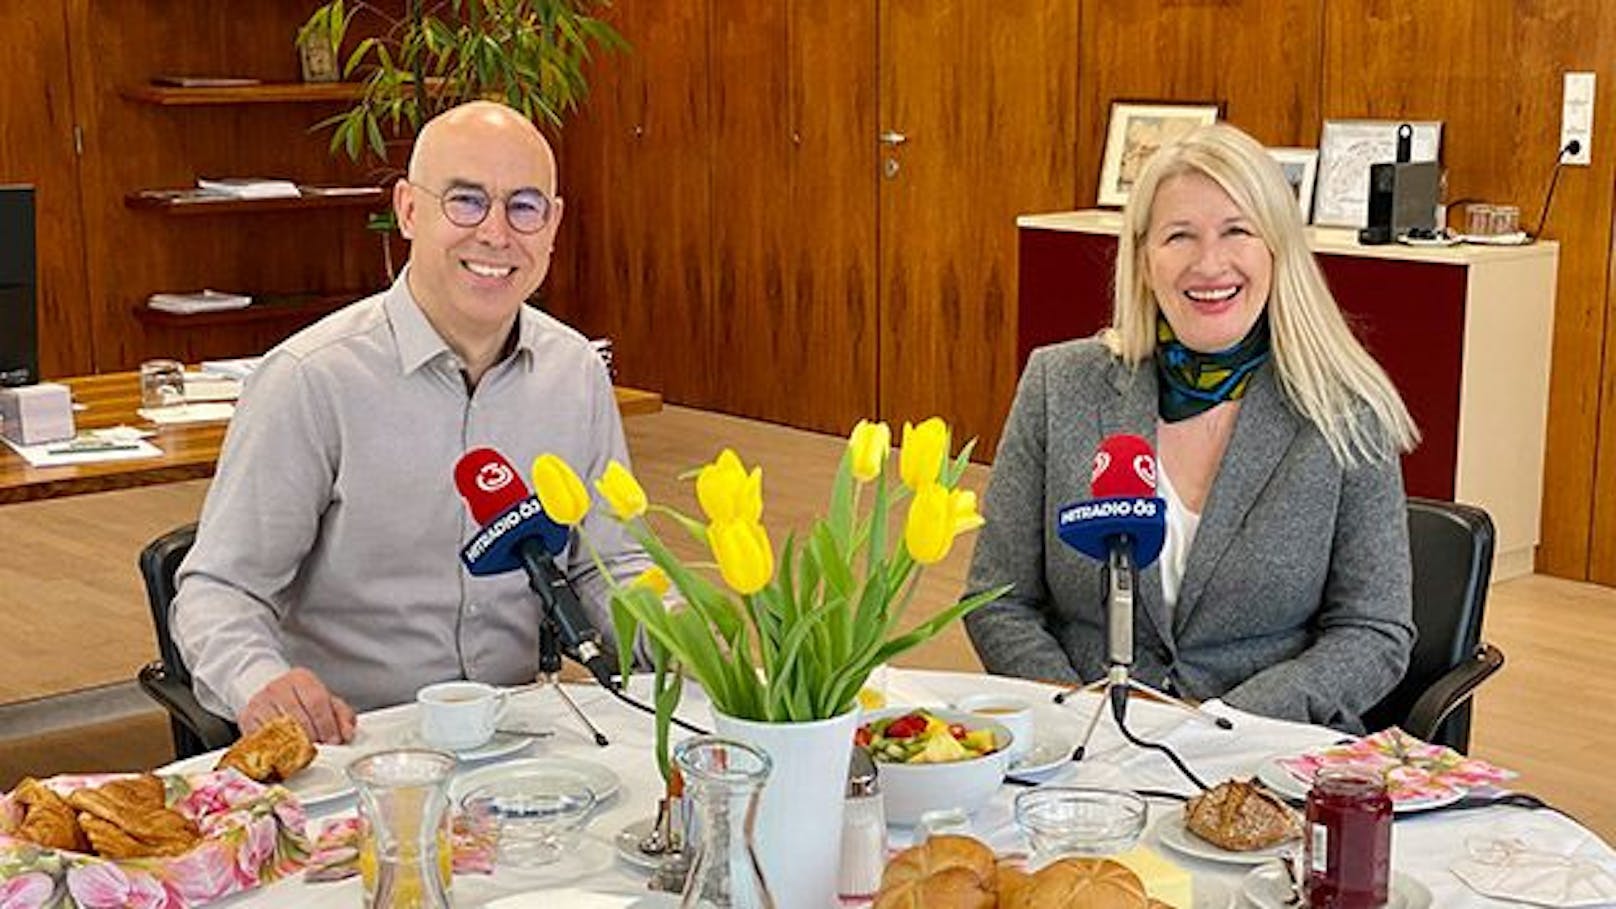 Wirtschaftsexperte Gabriel Felbermayr zu Gast bei Claudia Stöckl in "Frühstück bei mir".